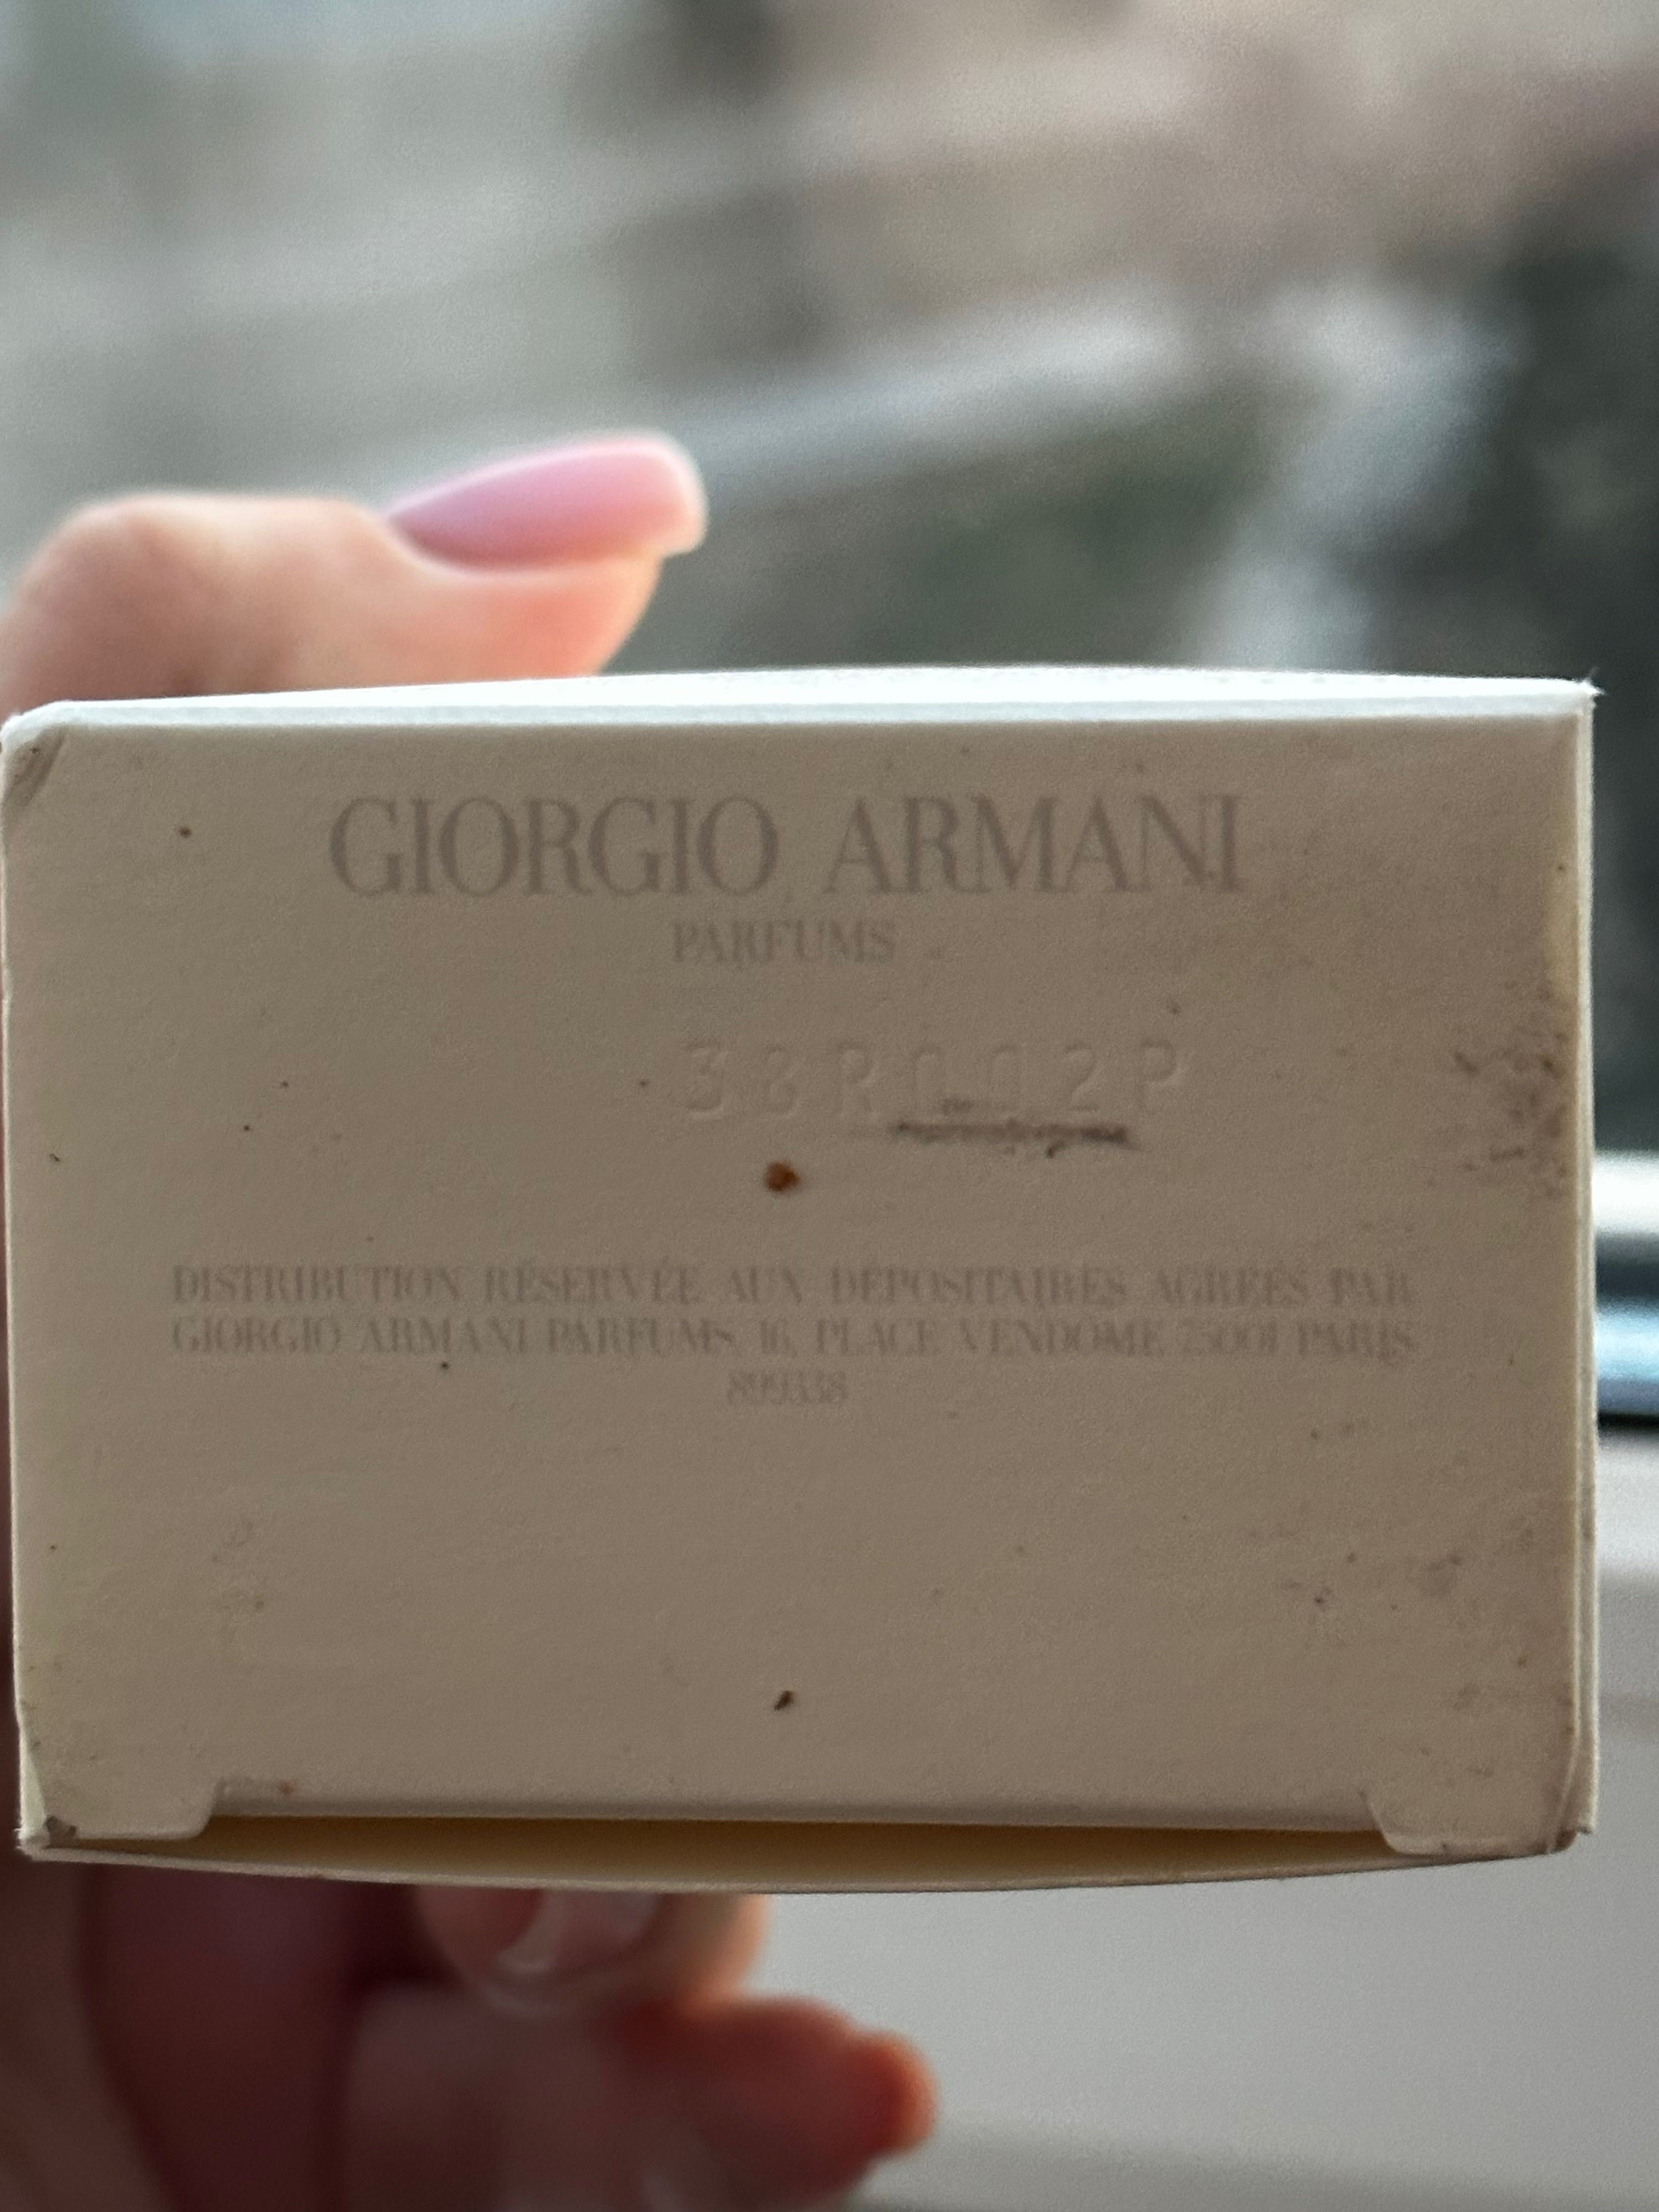 Giorgio Armani “In love with you”